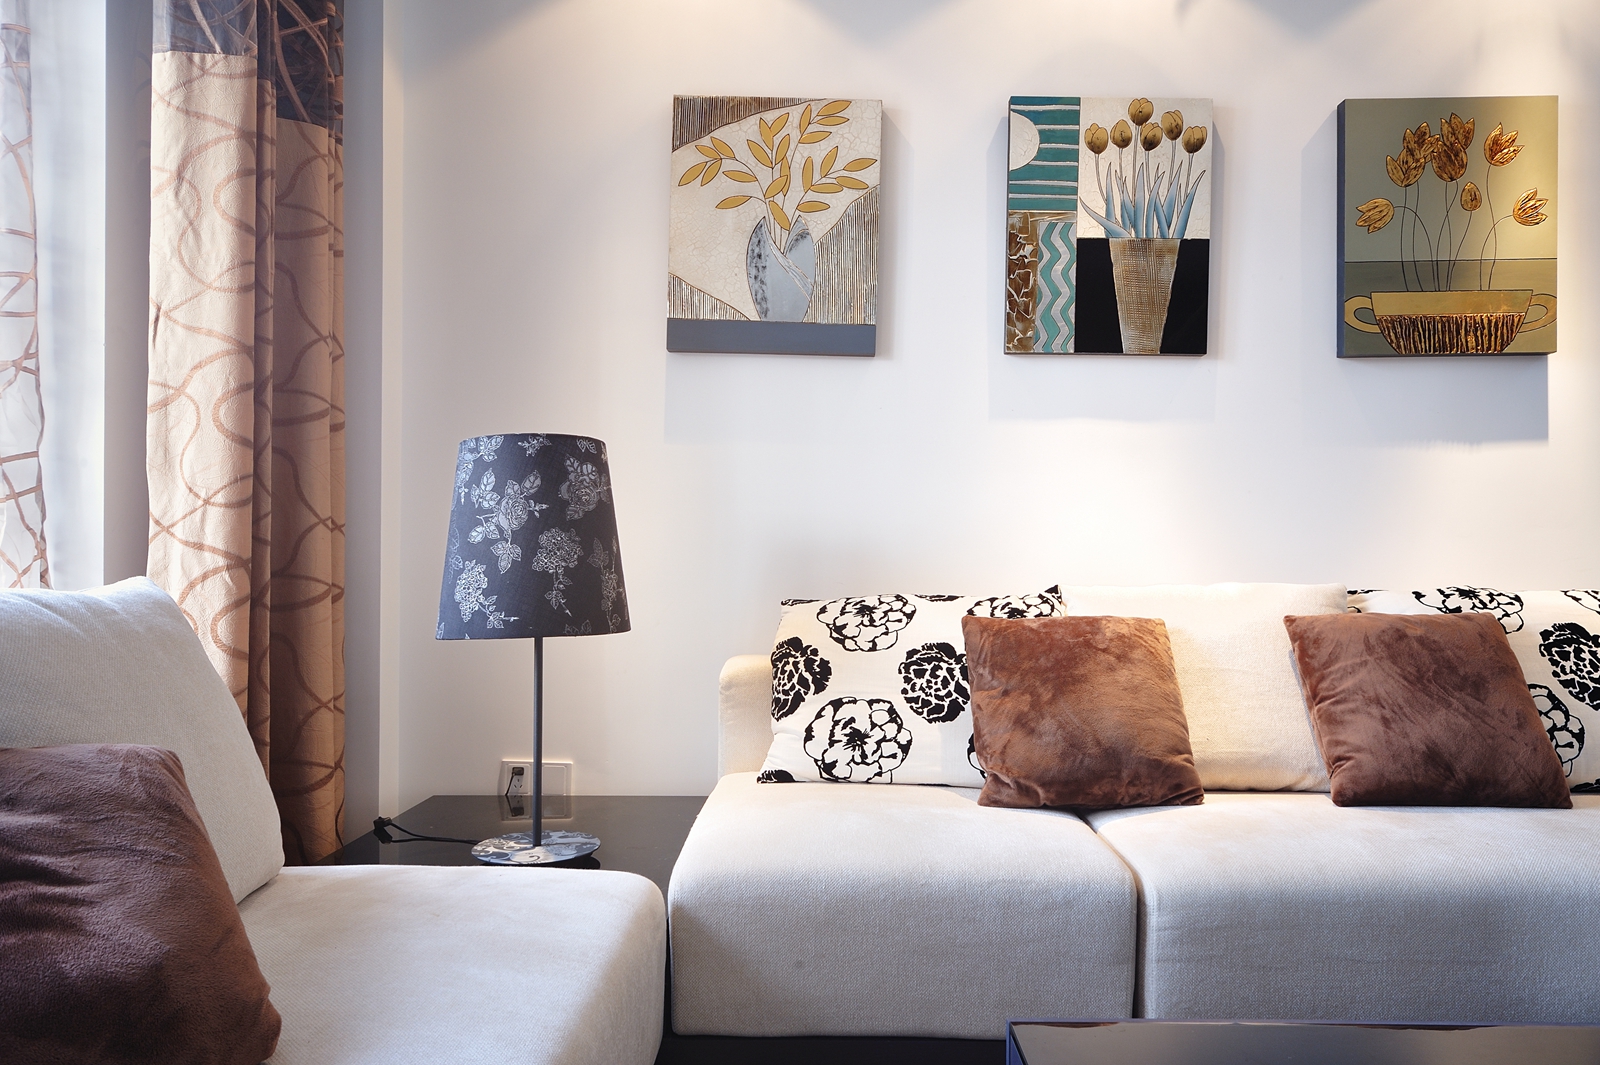 复室 混搭 现代 美式 客厅图片来自朗润装饰工程有限公司在现代 美式混搭风的分享